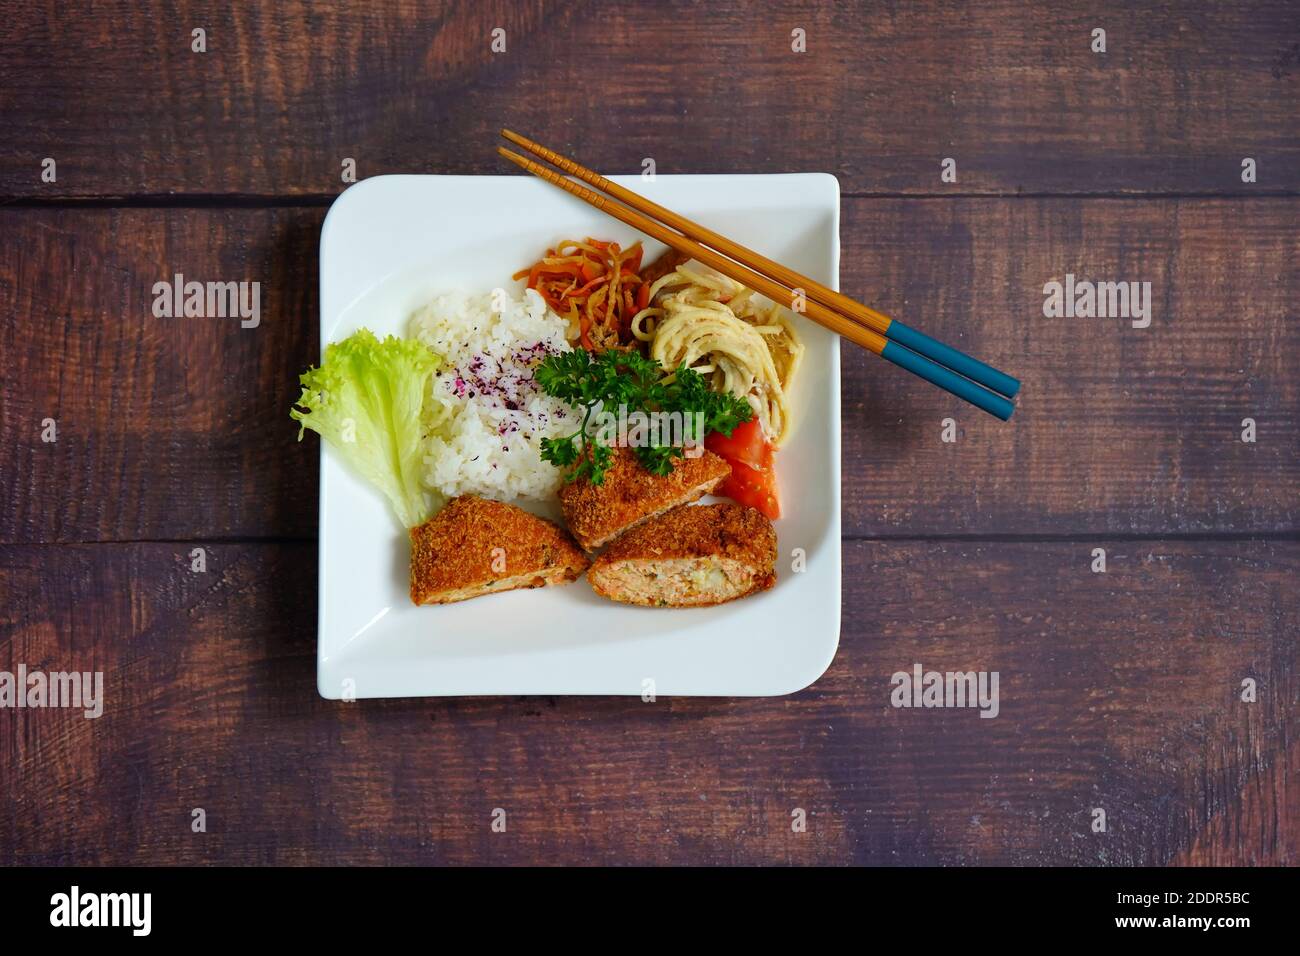 Japanischer Lachs Fischkuchen, Reis, Nudelsalat und Gemüse auf einem weißen Teller. Rustikale dunkle Holztisch Hintergrund. Stockfoto